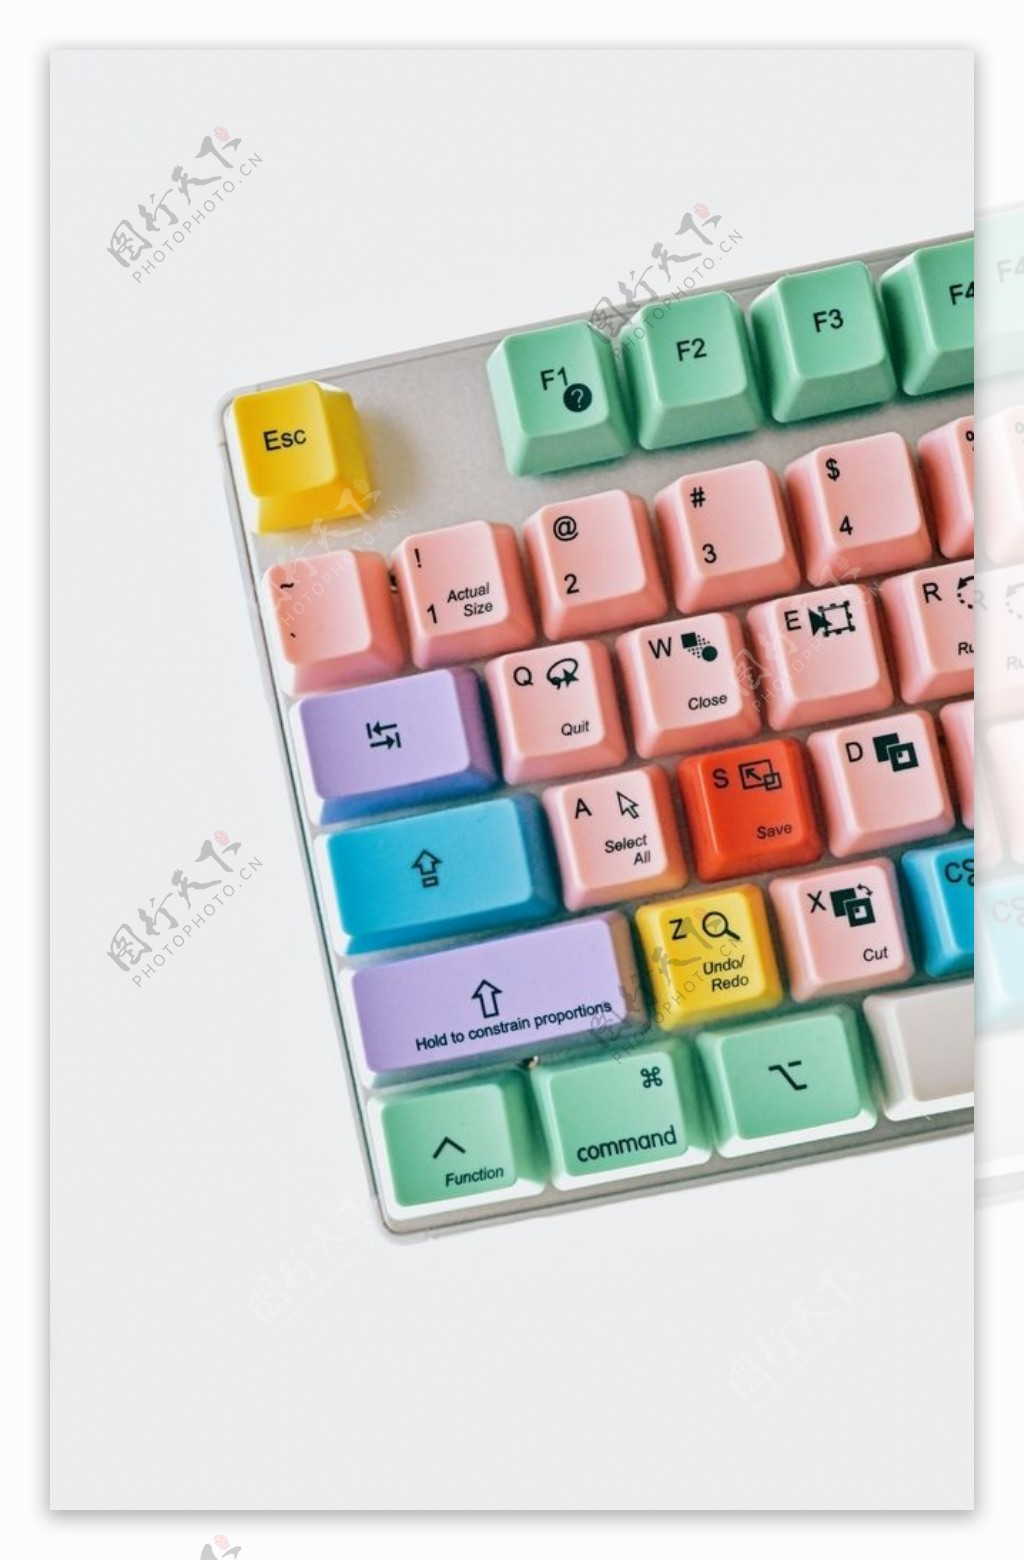 彩色键盘图片